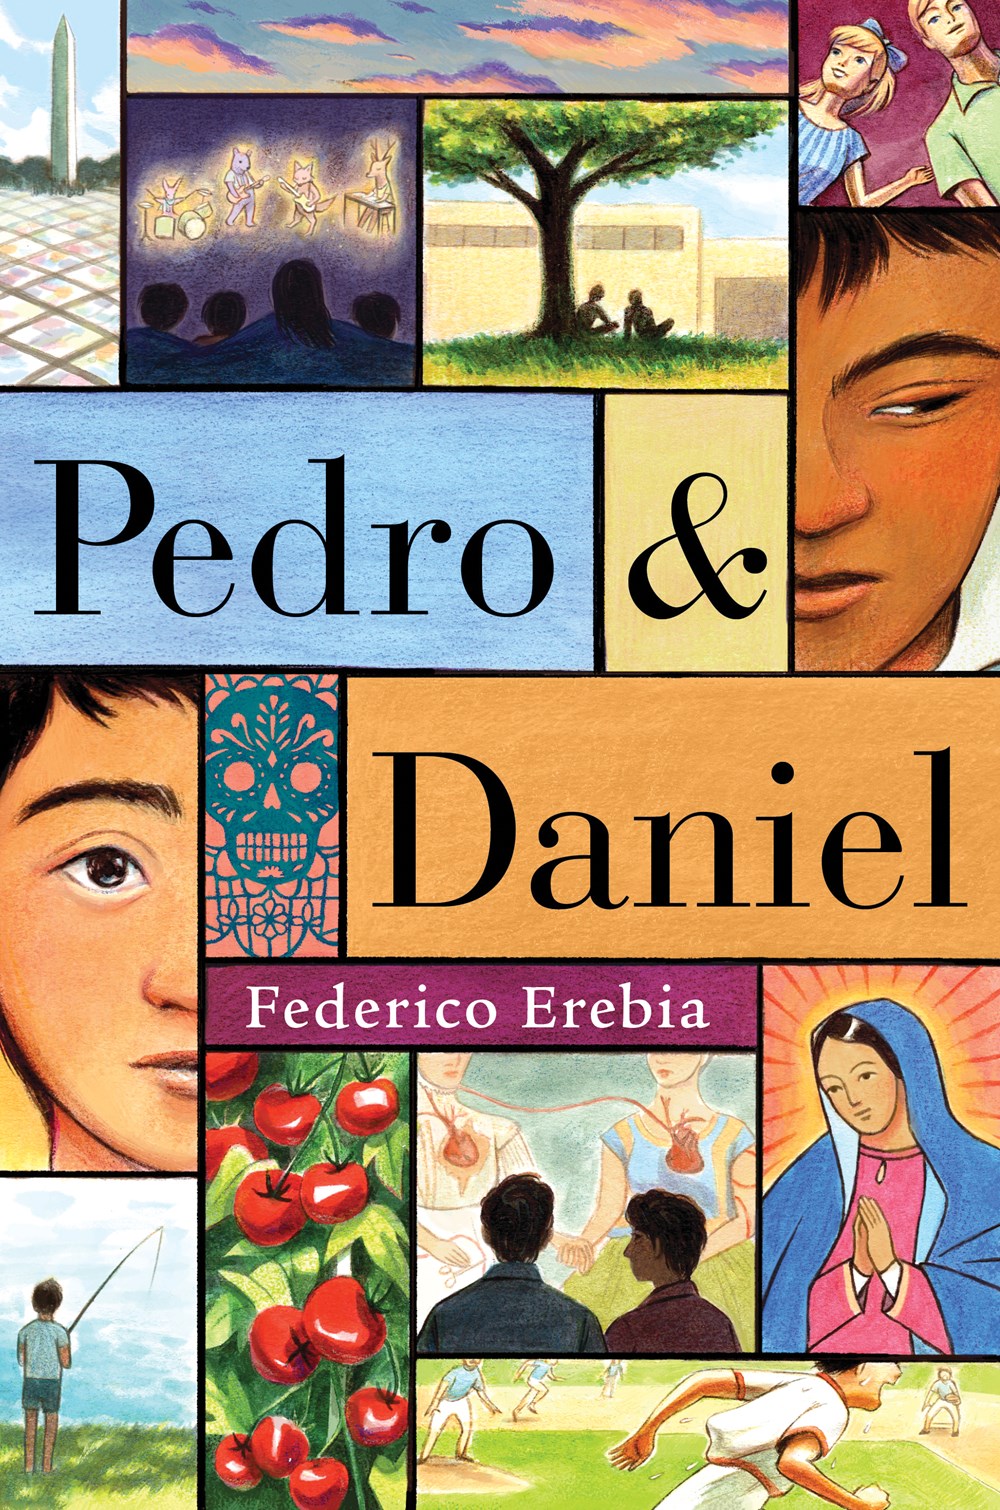 Pedro & Daniel by Federico Erebia (Hardcover)